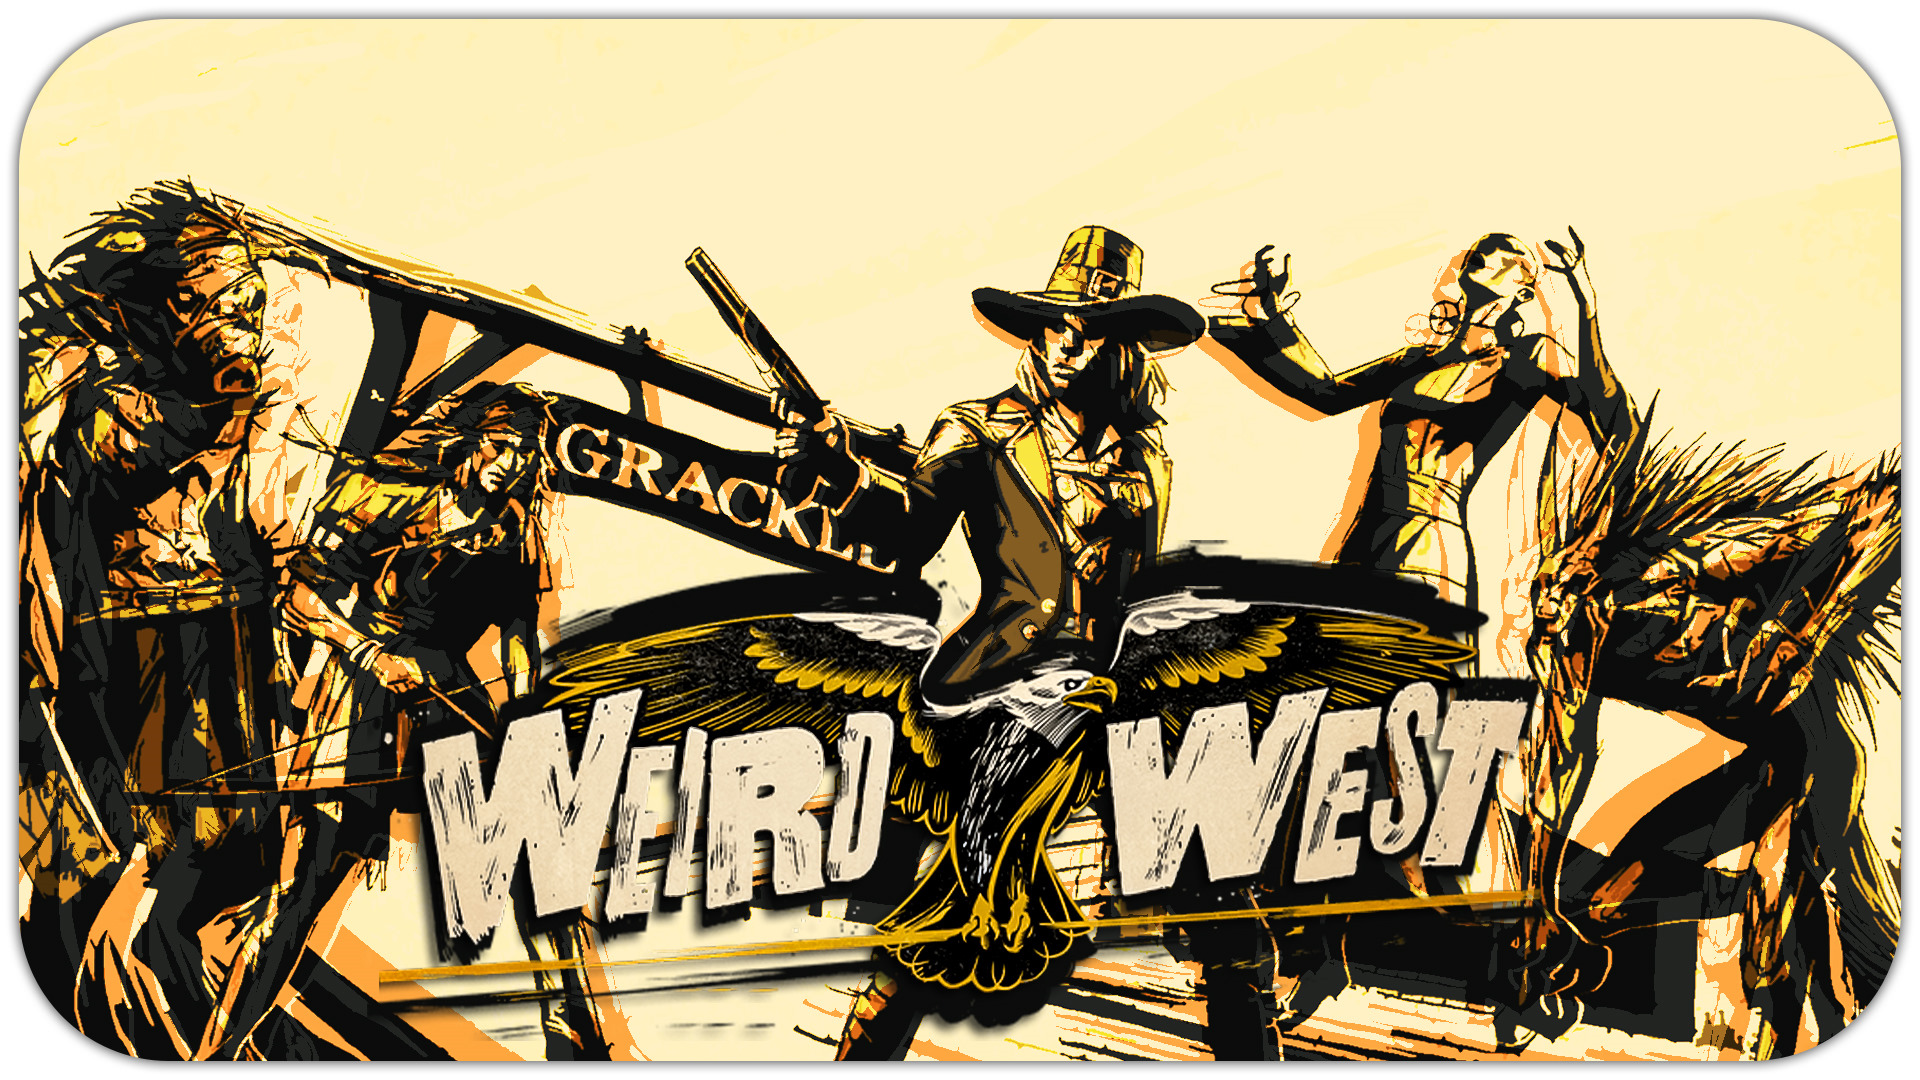 ПРИКЛЮЧЕНИЯ (Стрим) - Weird West #2 - Прохождение